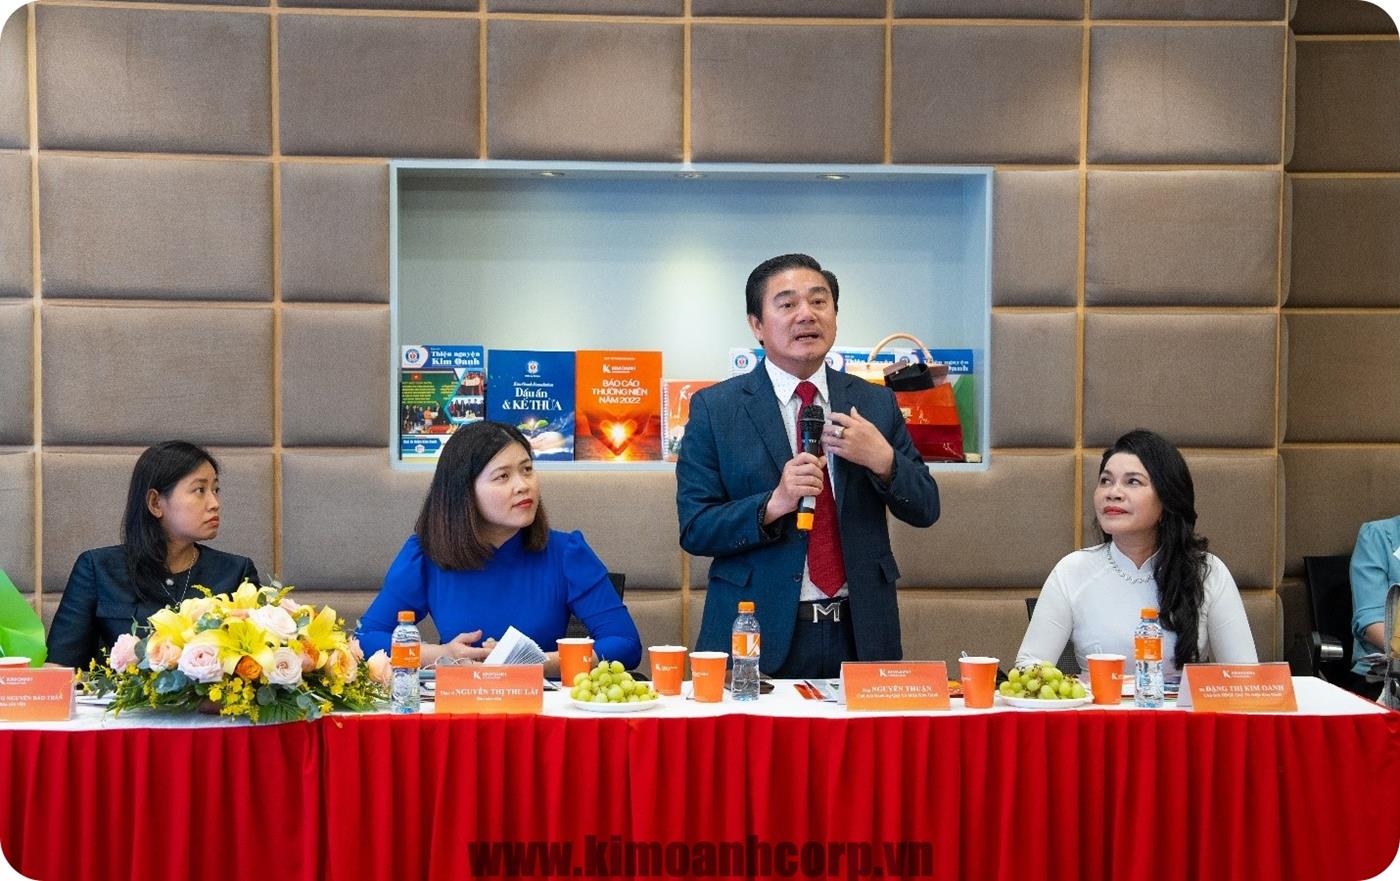 Ông Nguyễn Thuận – Phó Chủ tịch Quỹ Từ thiện Kim Oanh trao đổi về các phương thức hỗ trợ từ thiện trong xã hội hiện nay và ý nghĩa tinh thần từ các hoạt động của Quỹ Từ thiện Kim Oanh